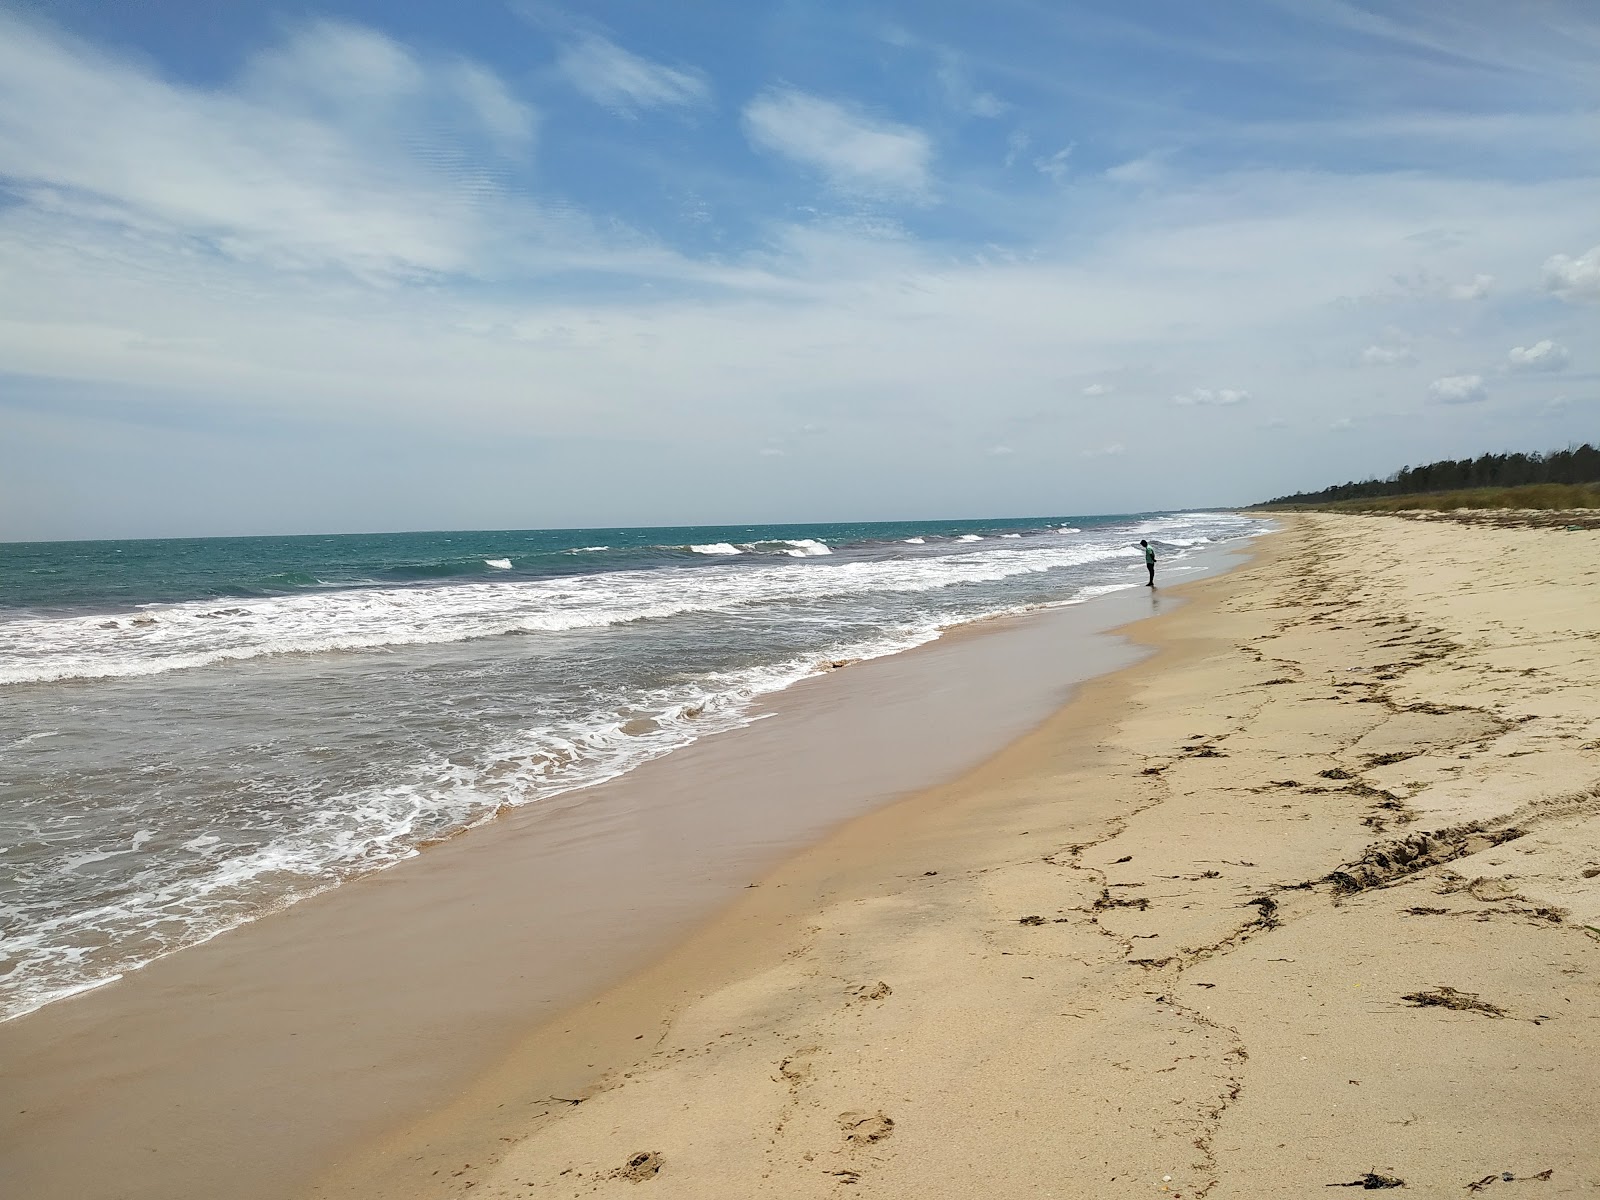 Zdjęcie Mariyur Beach z powierzchnią jasny piasek